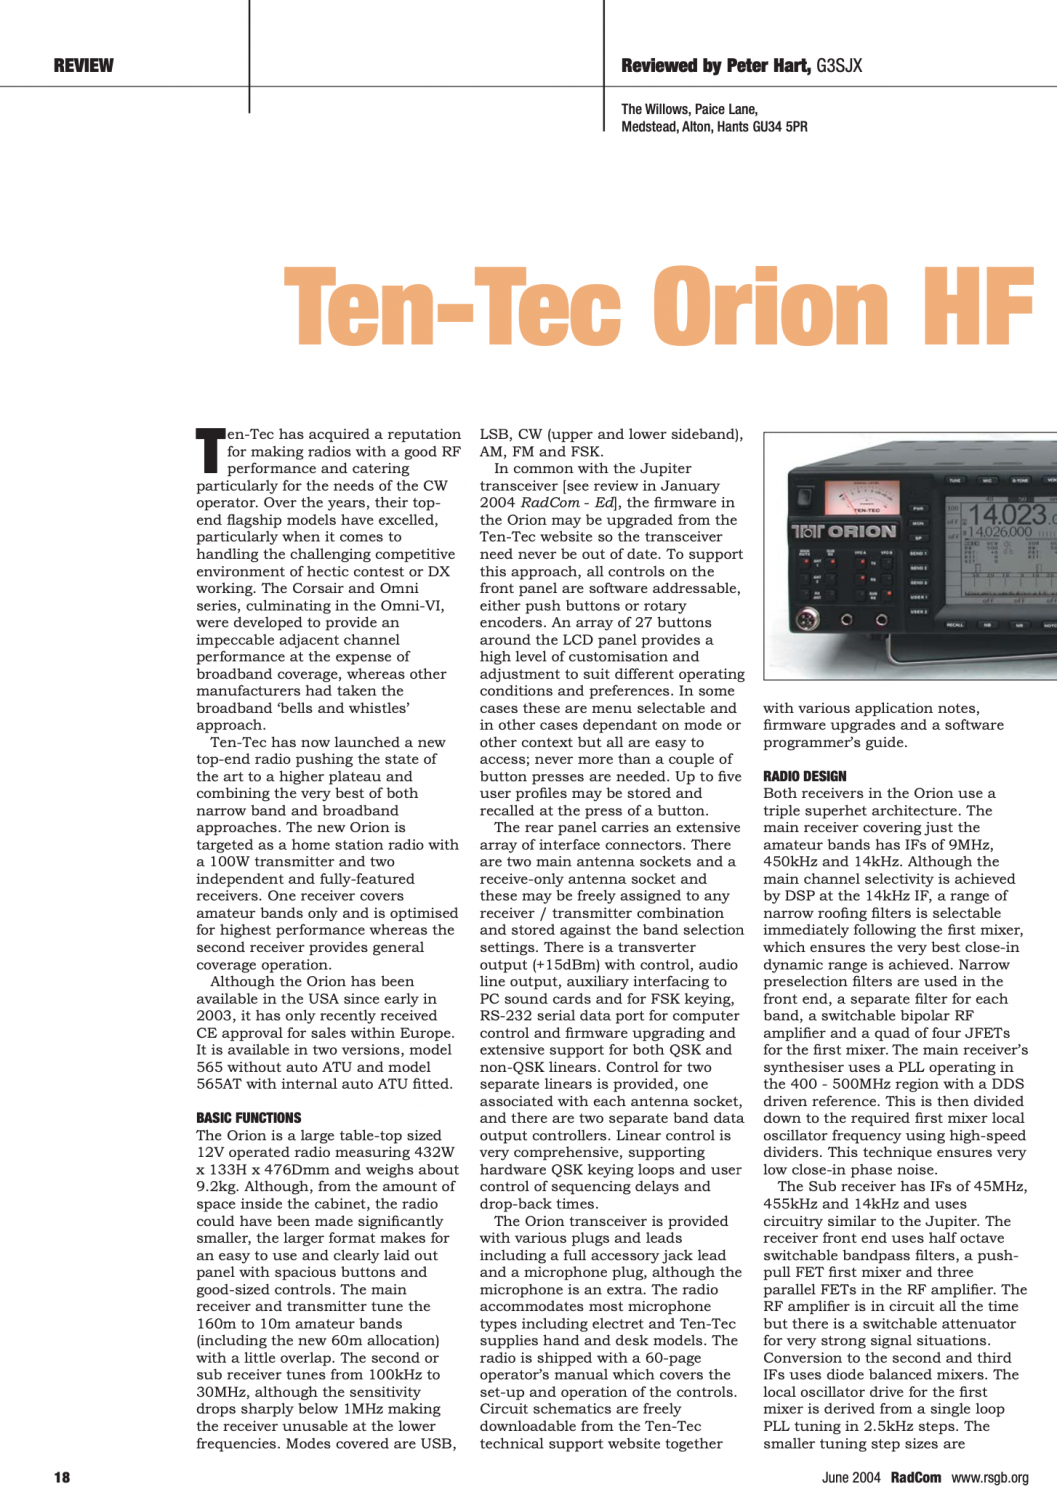 Ten-Tec - Orion I Model 565 - HF Transceiver - Review by RadCom (2004-06)